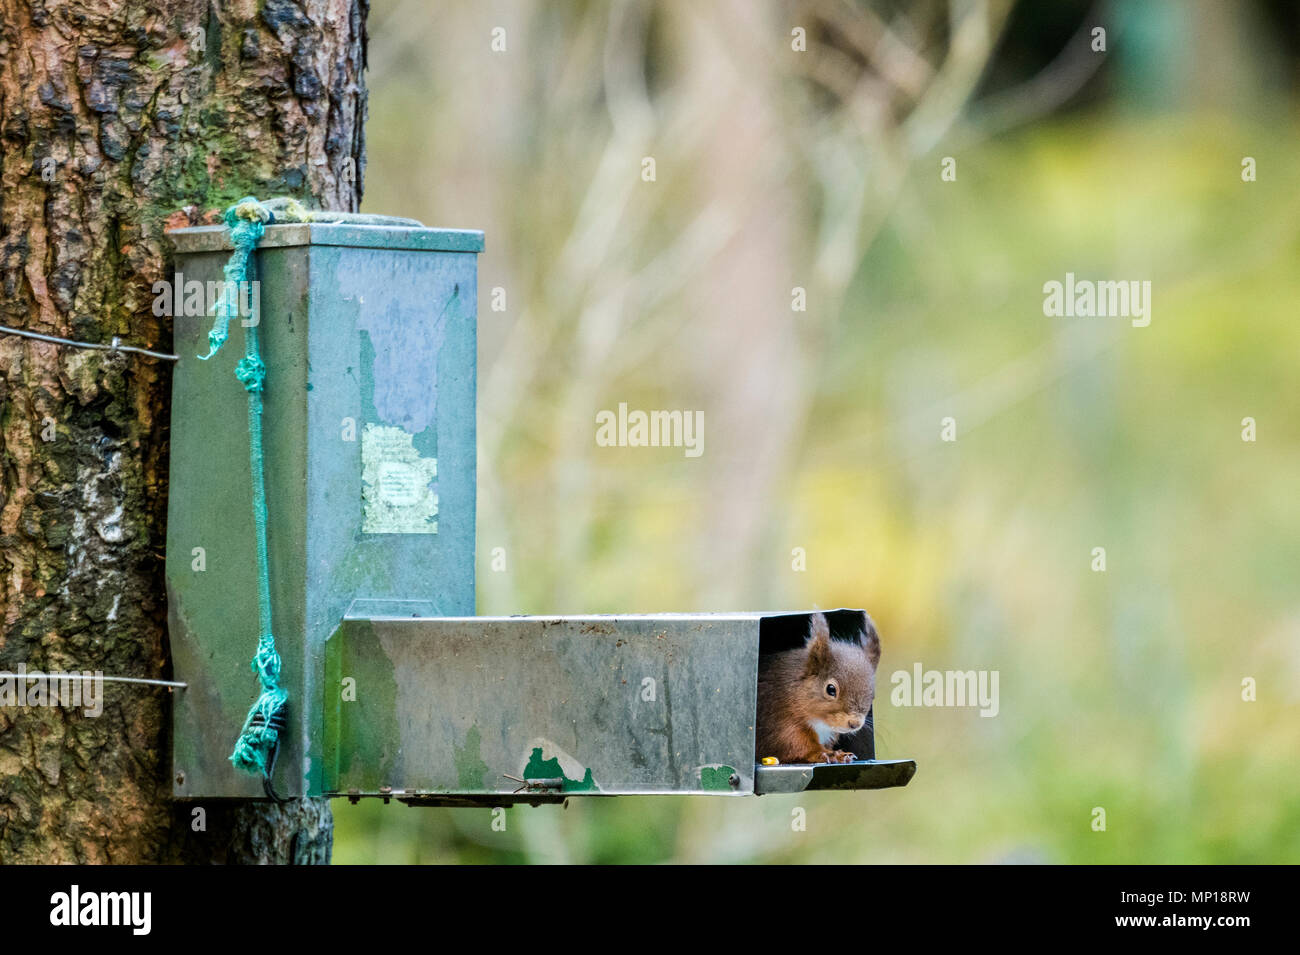 Single, poussant l'écureuil rouge mignon sa tête hors de l'alimentation de semences sur tronc d'arbre - Snaizeholme Écureuil rouge Trail, près de Hawes, Yorkshire, Angleterre, Royaume-Uni. Banque D'Images